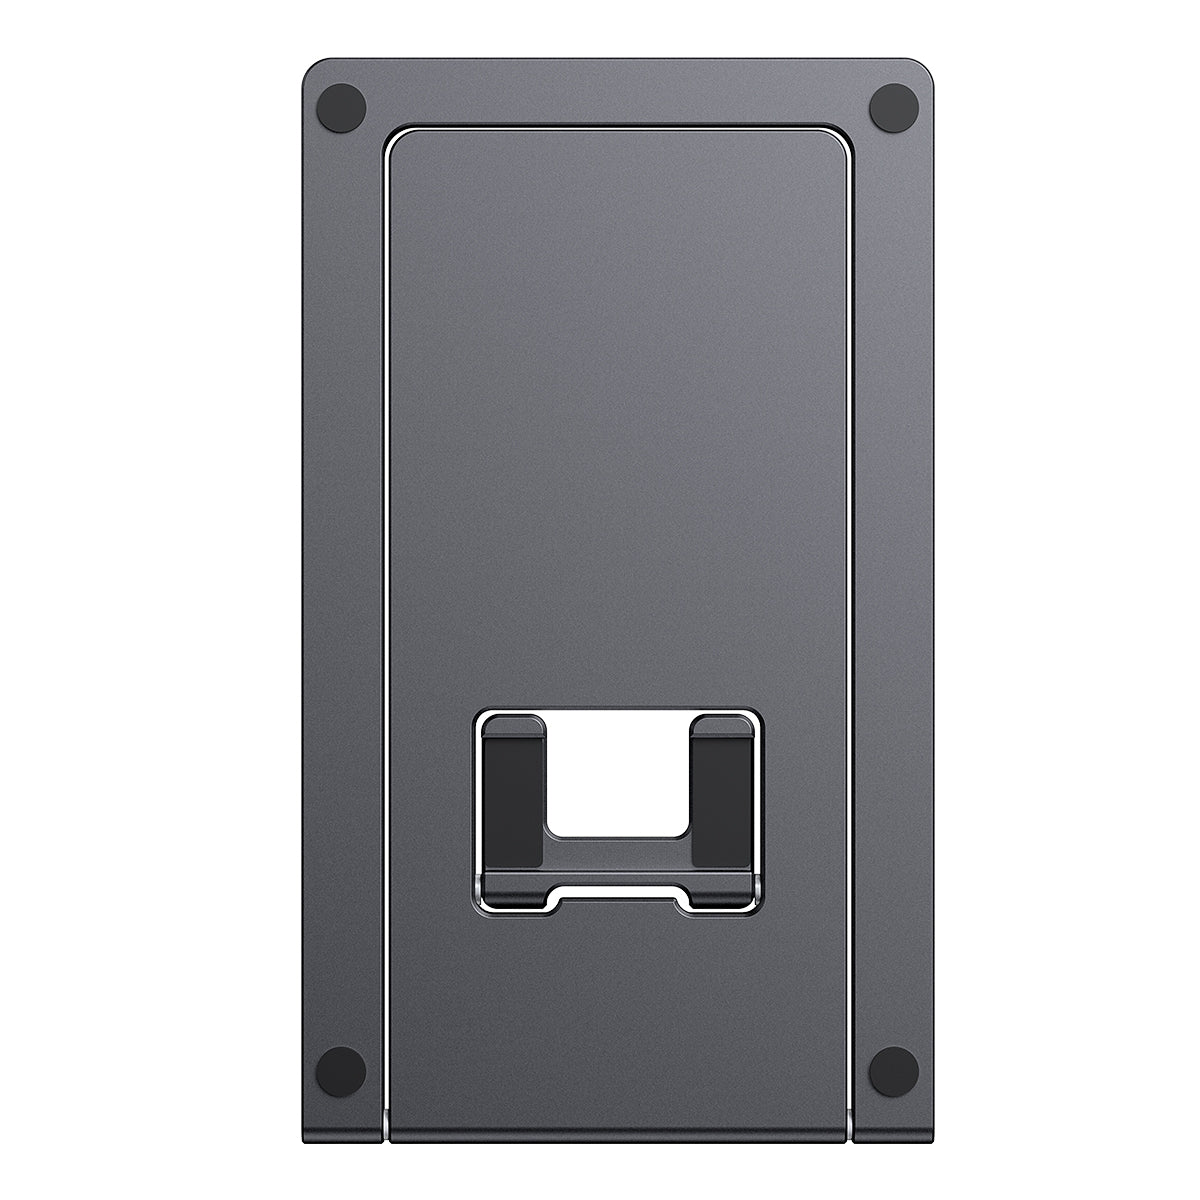 Baseus Foldable Metal Desktop Holder